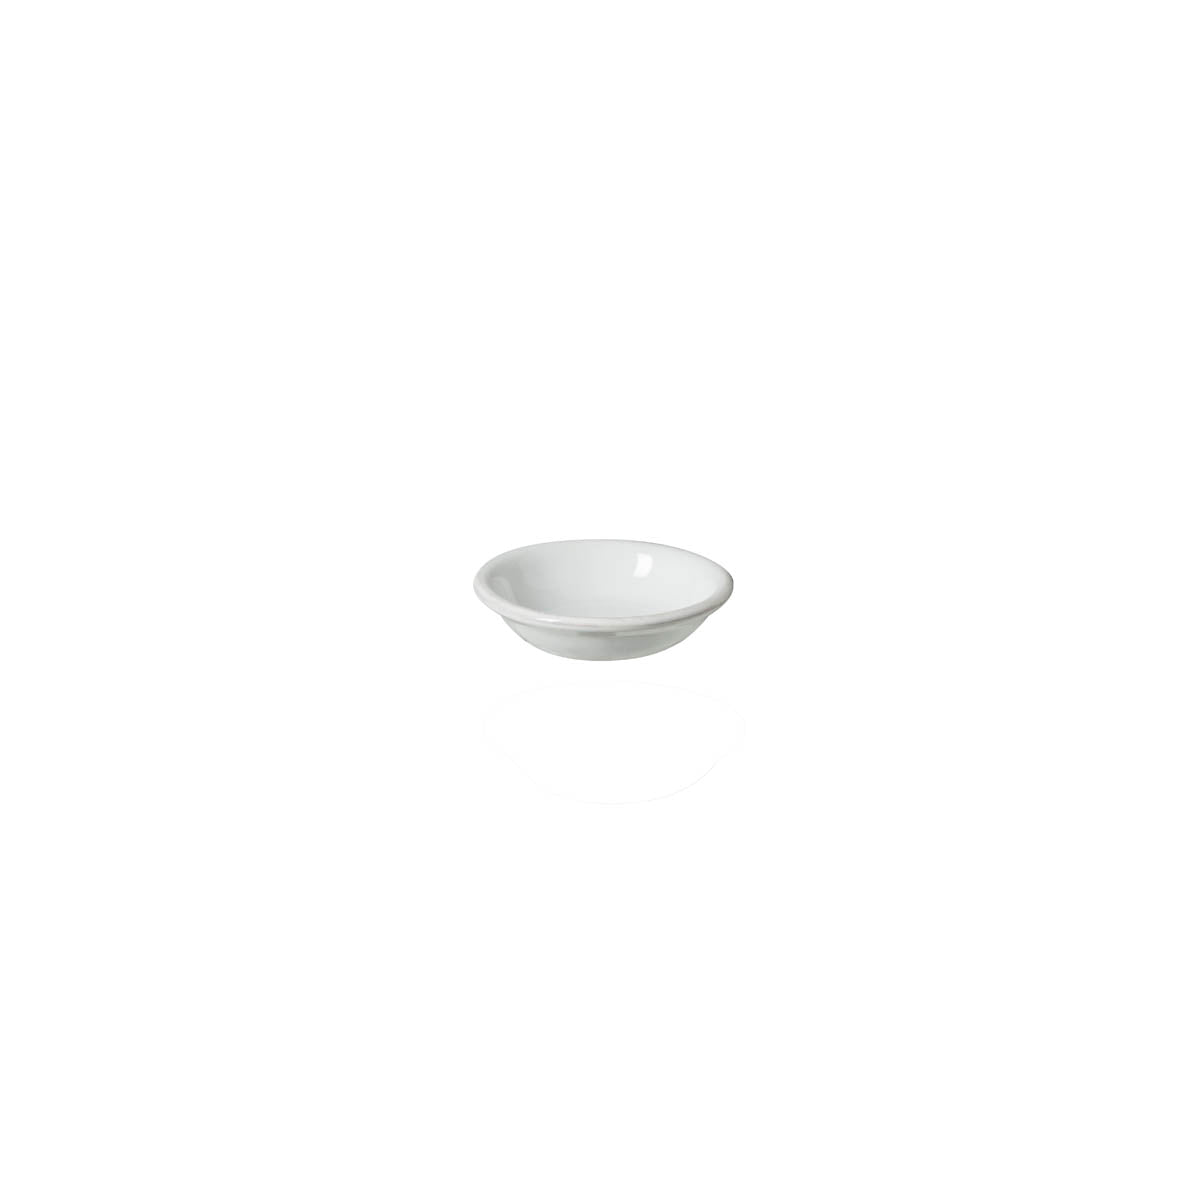 300139 Costa Nova Aparte White Round Dip Dish 110mm / 90ml Tomkin Australia Hospitality Supplies